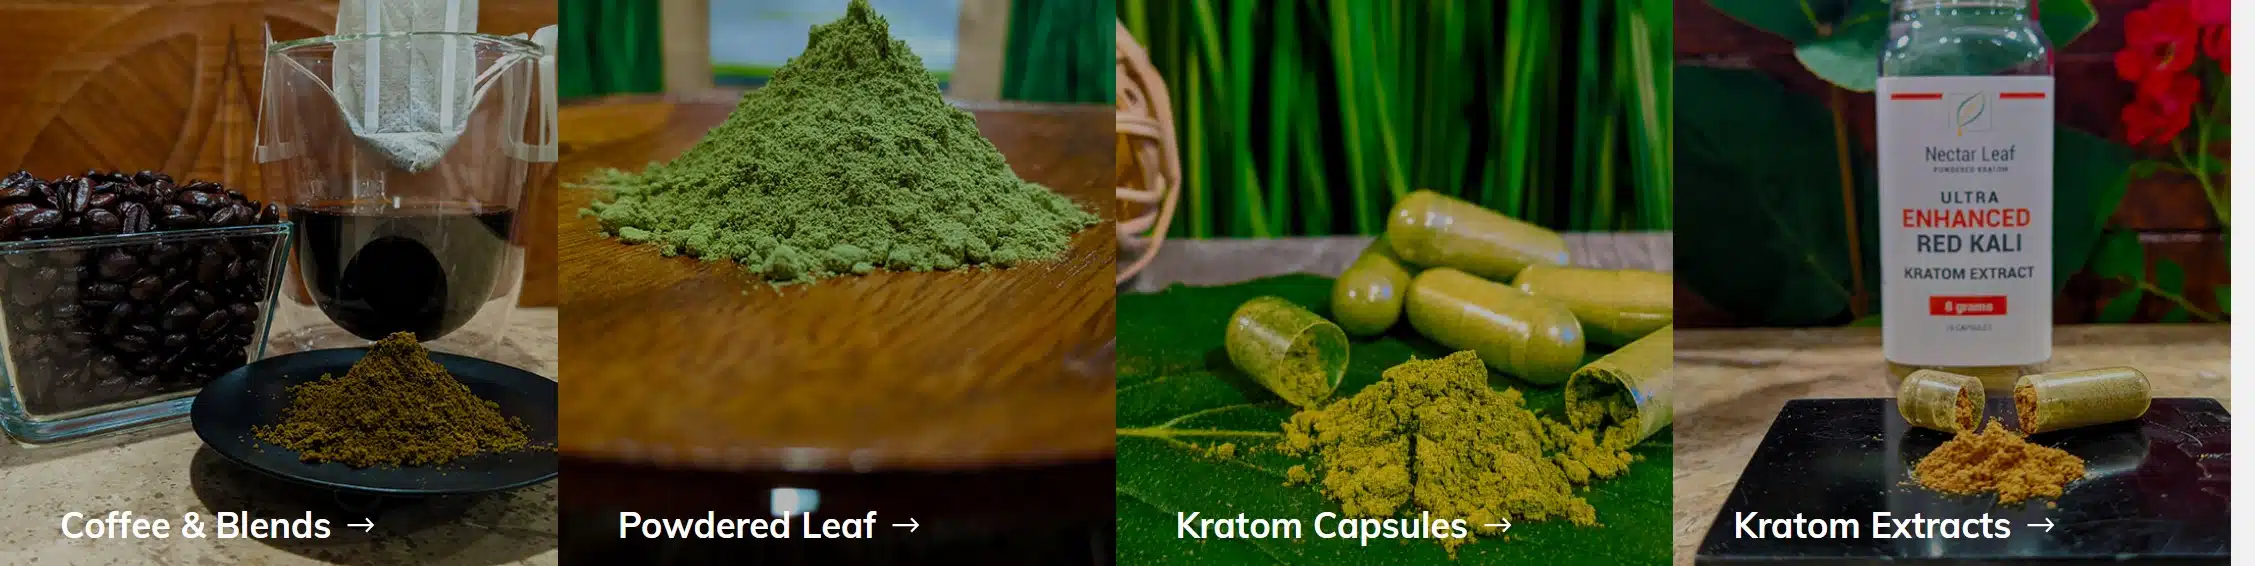 nectar leaf kratom products